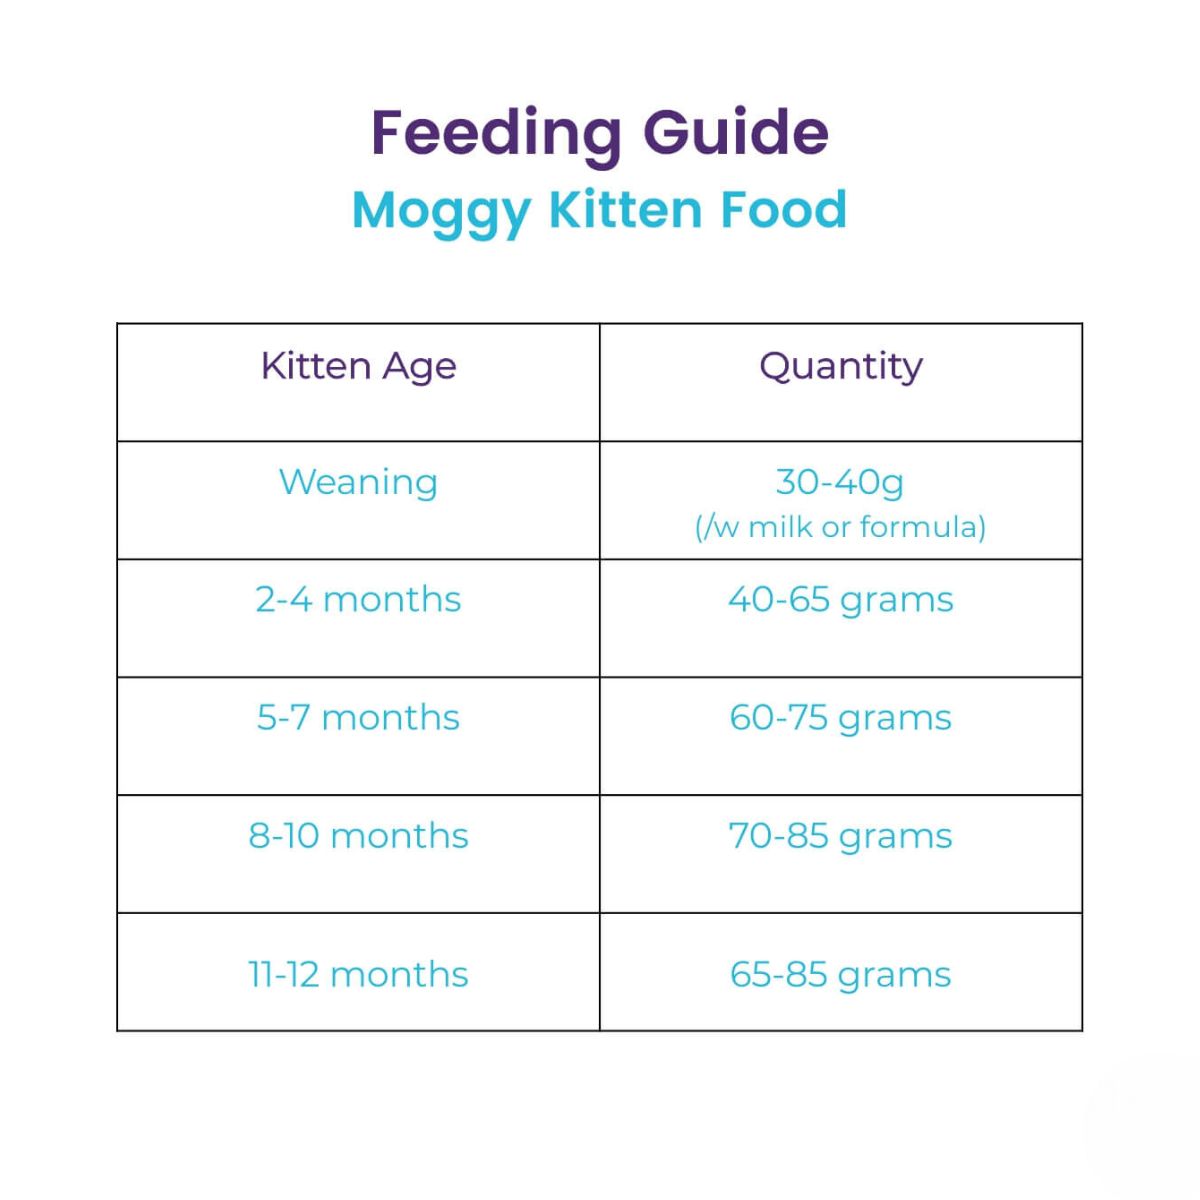 Moggy-Kitten-Food-1kg-modernwears-pk-price-in-pakistan-Huz0027